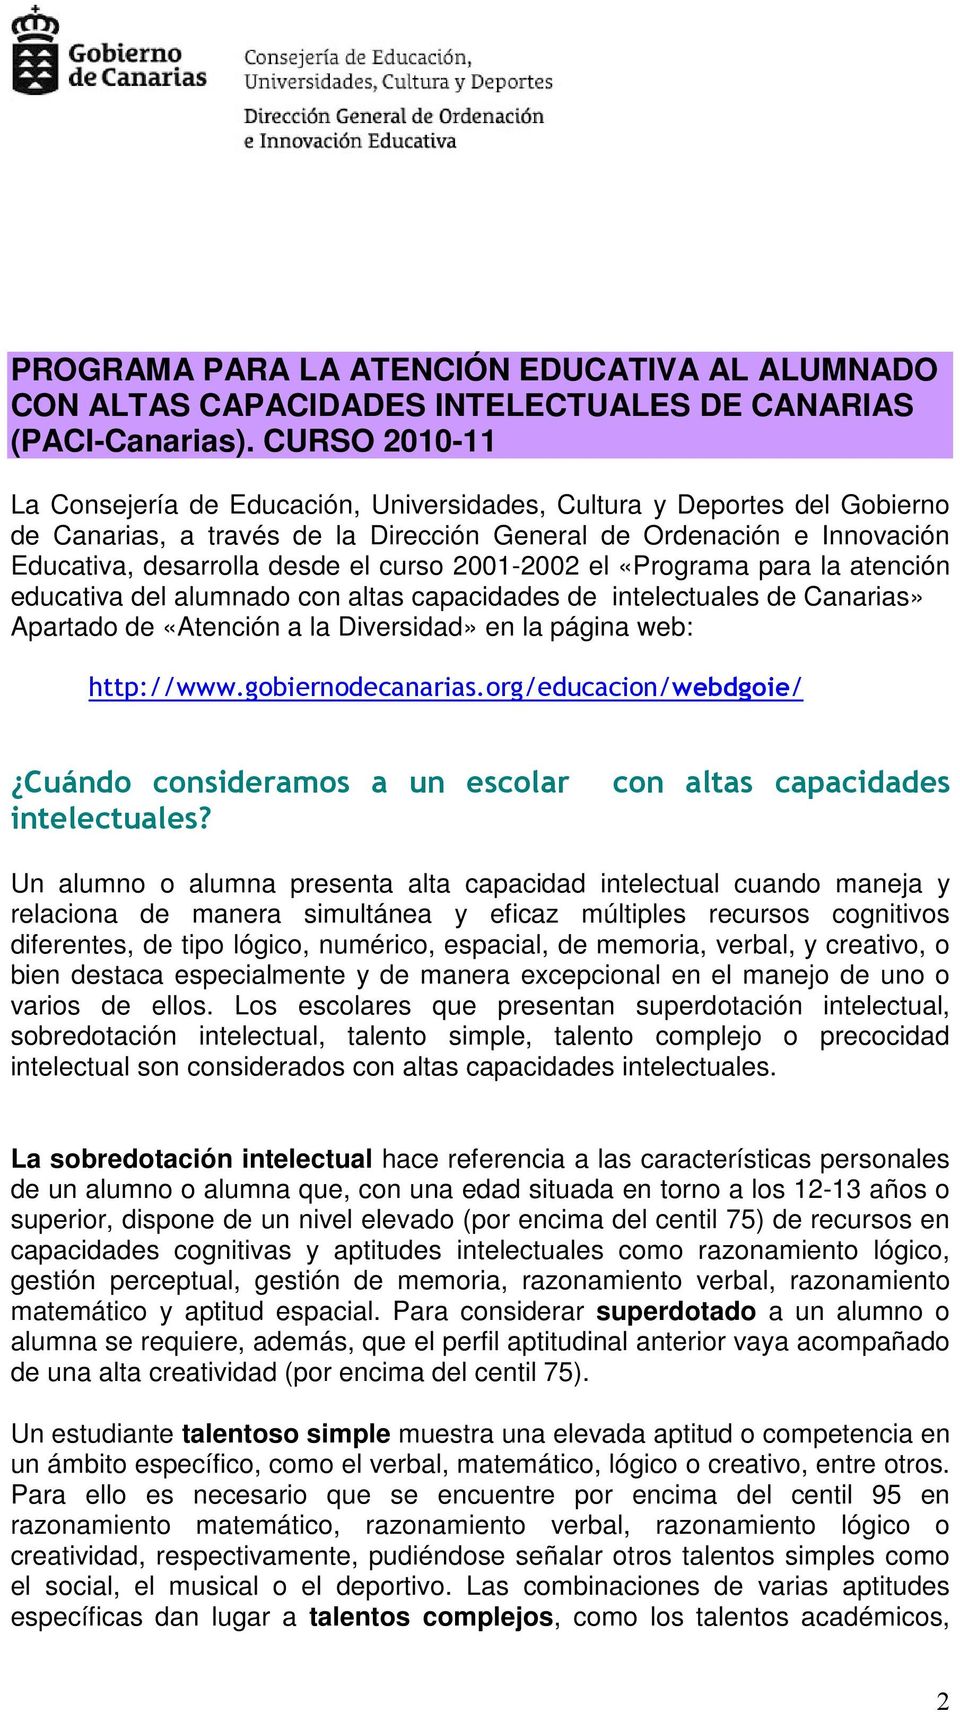 2001-2002 el «Programa para la atención educativa del alumnado con altas capacidades de intelectuales de Canarias» Apartado de «Atención a la Diversidad» en la página web: http://www.